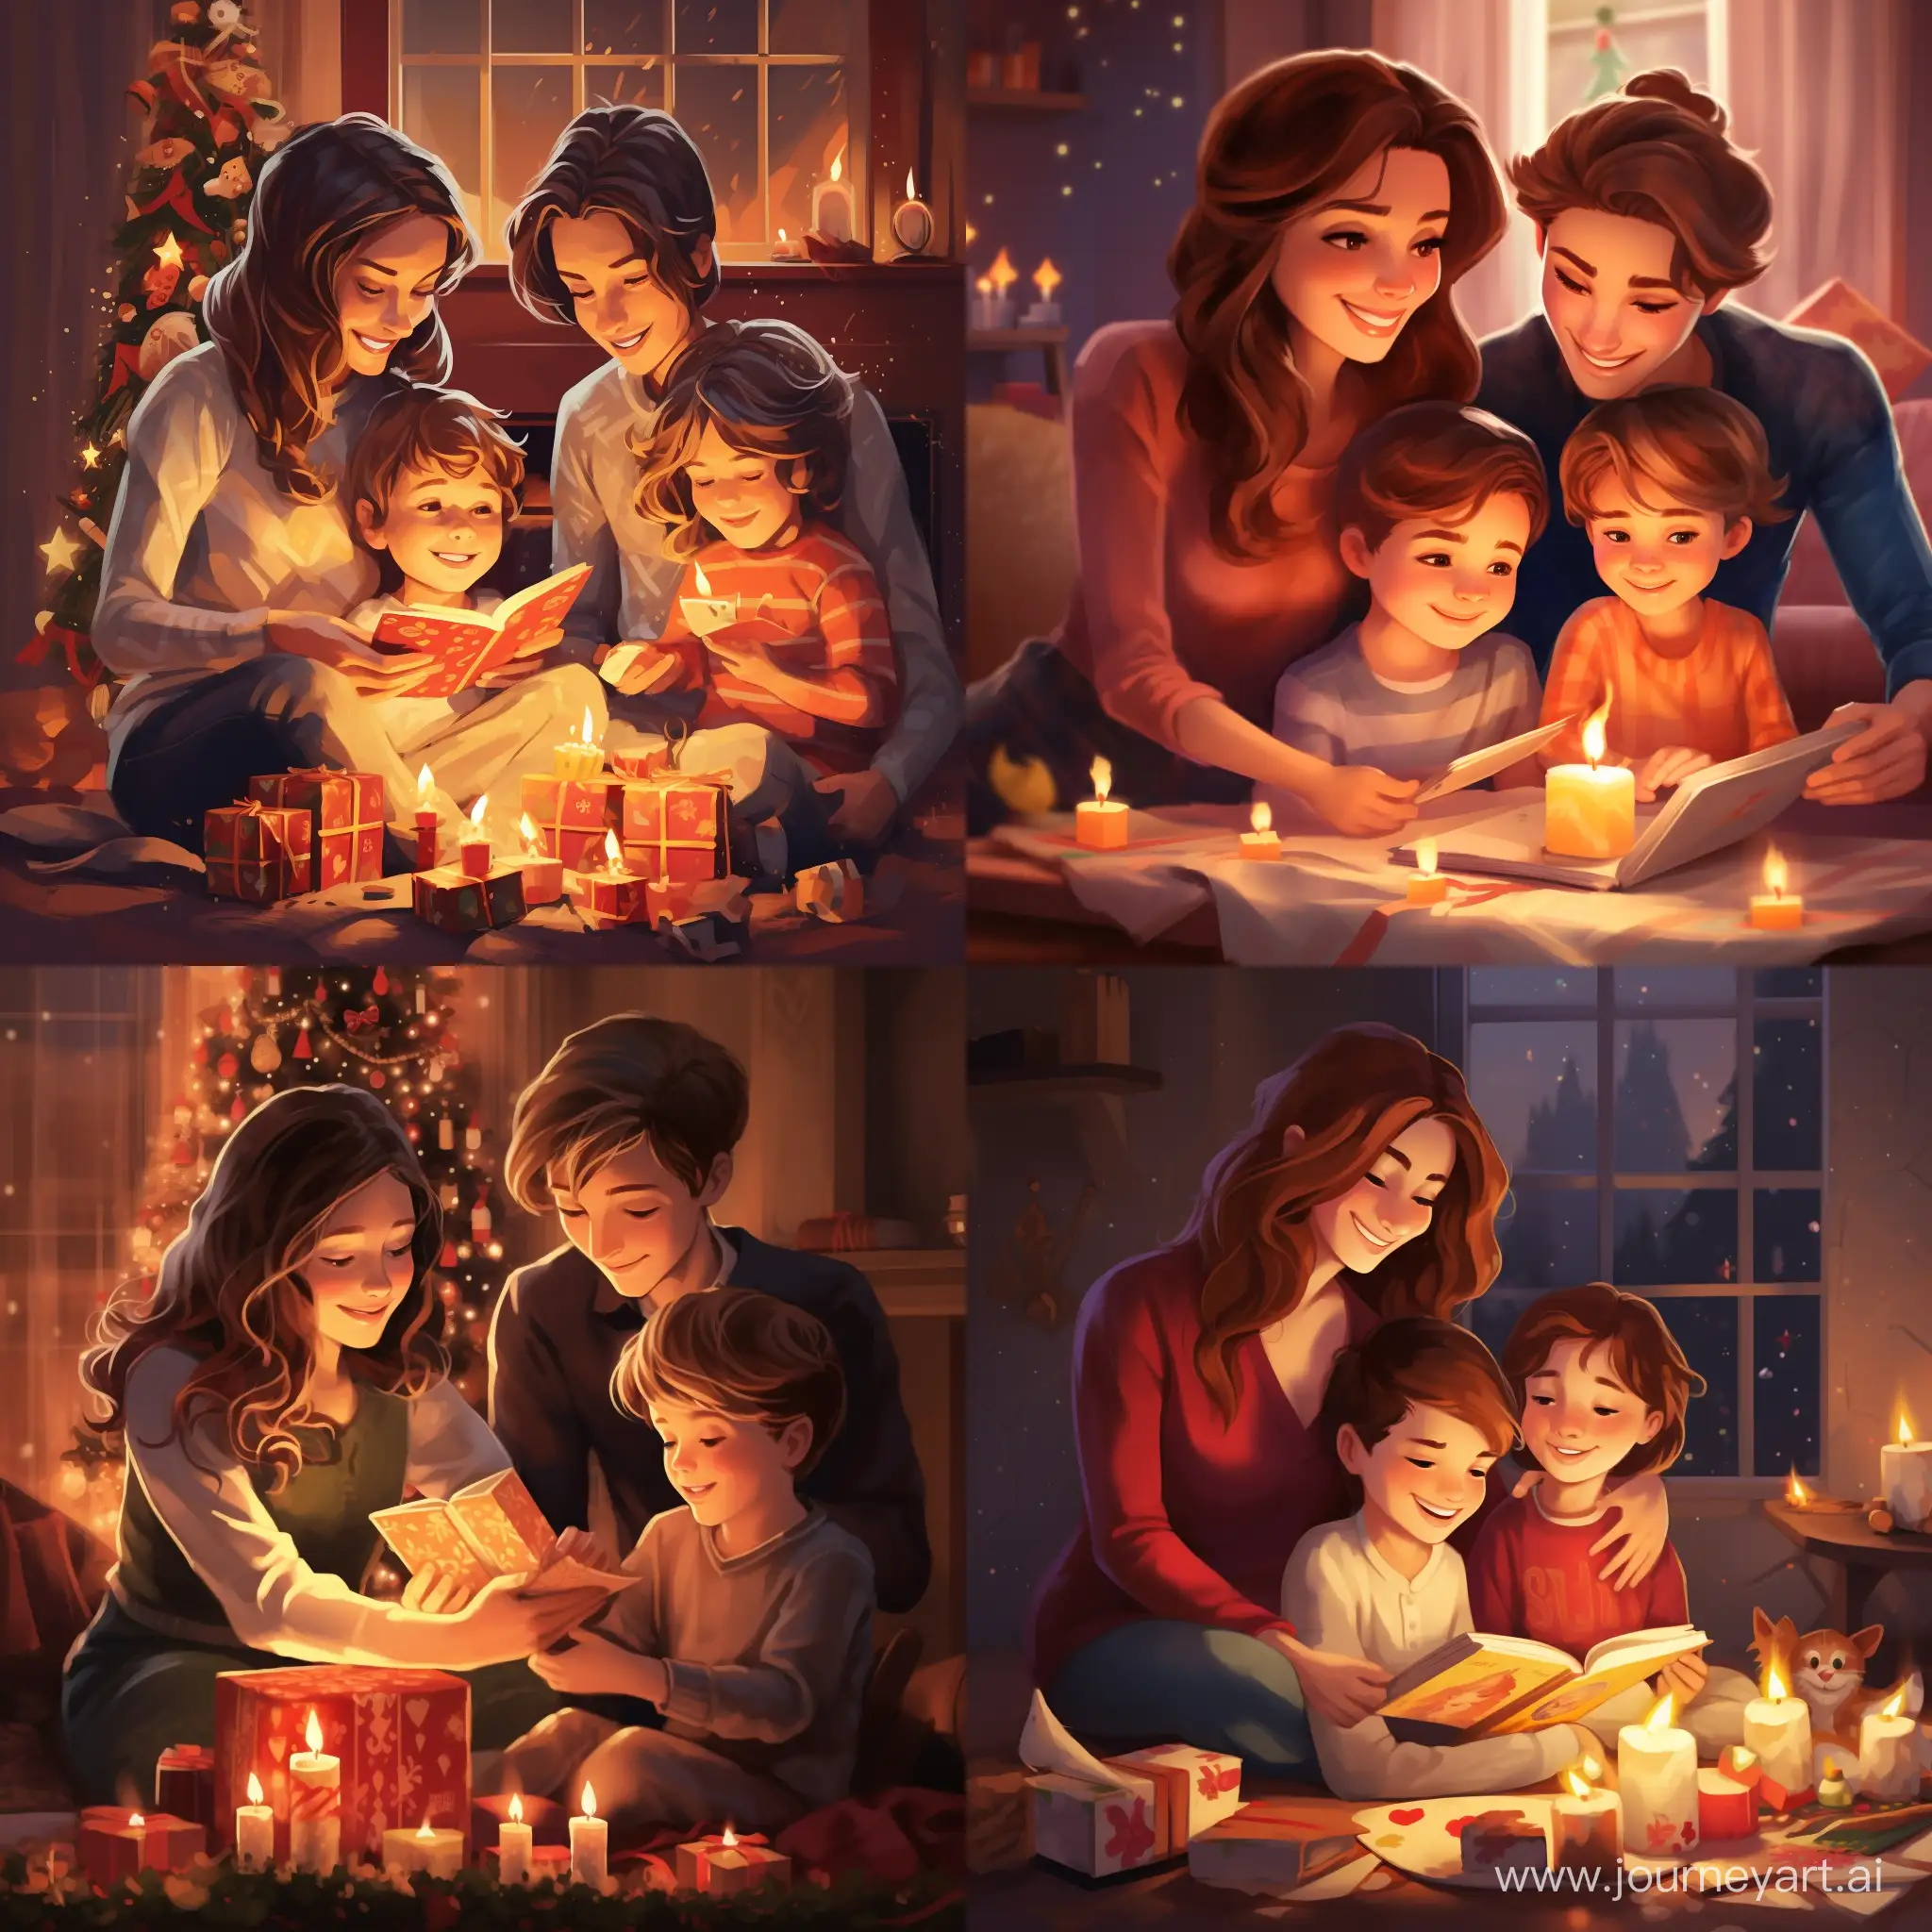 С Рождеством, веселые мама, девочка, и мальчик, открывают подарки, яркая и праздничная атмосфера, высококачественный, мультипликационный стиль, теплые тона, мягкое освещение, уютный камин, подробные выражения, праздничное волнение, волшебная атмосфера, радостное празднование